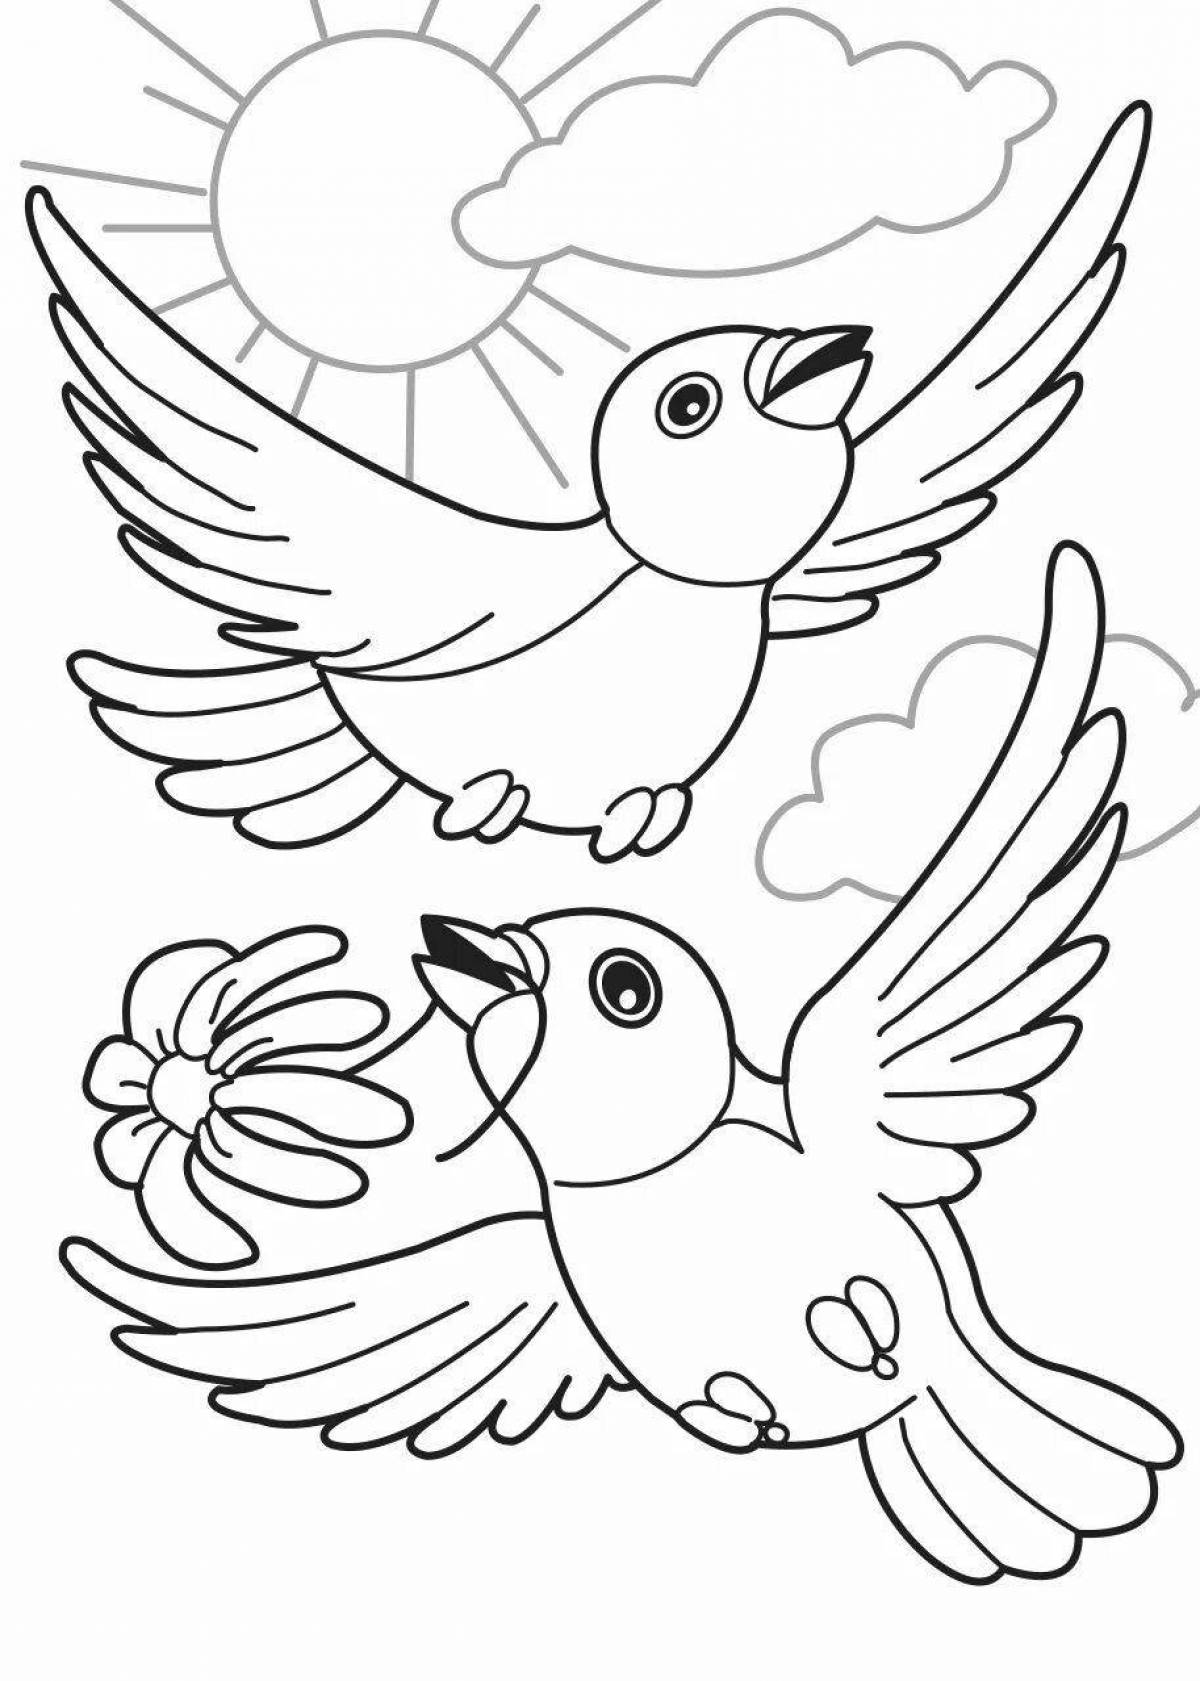 Раскраски с милыми птичками для детей 2-3 лет